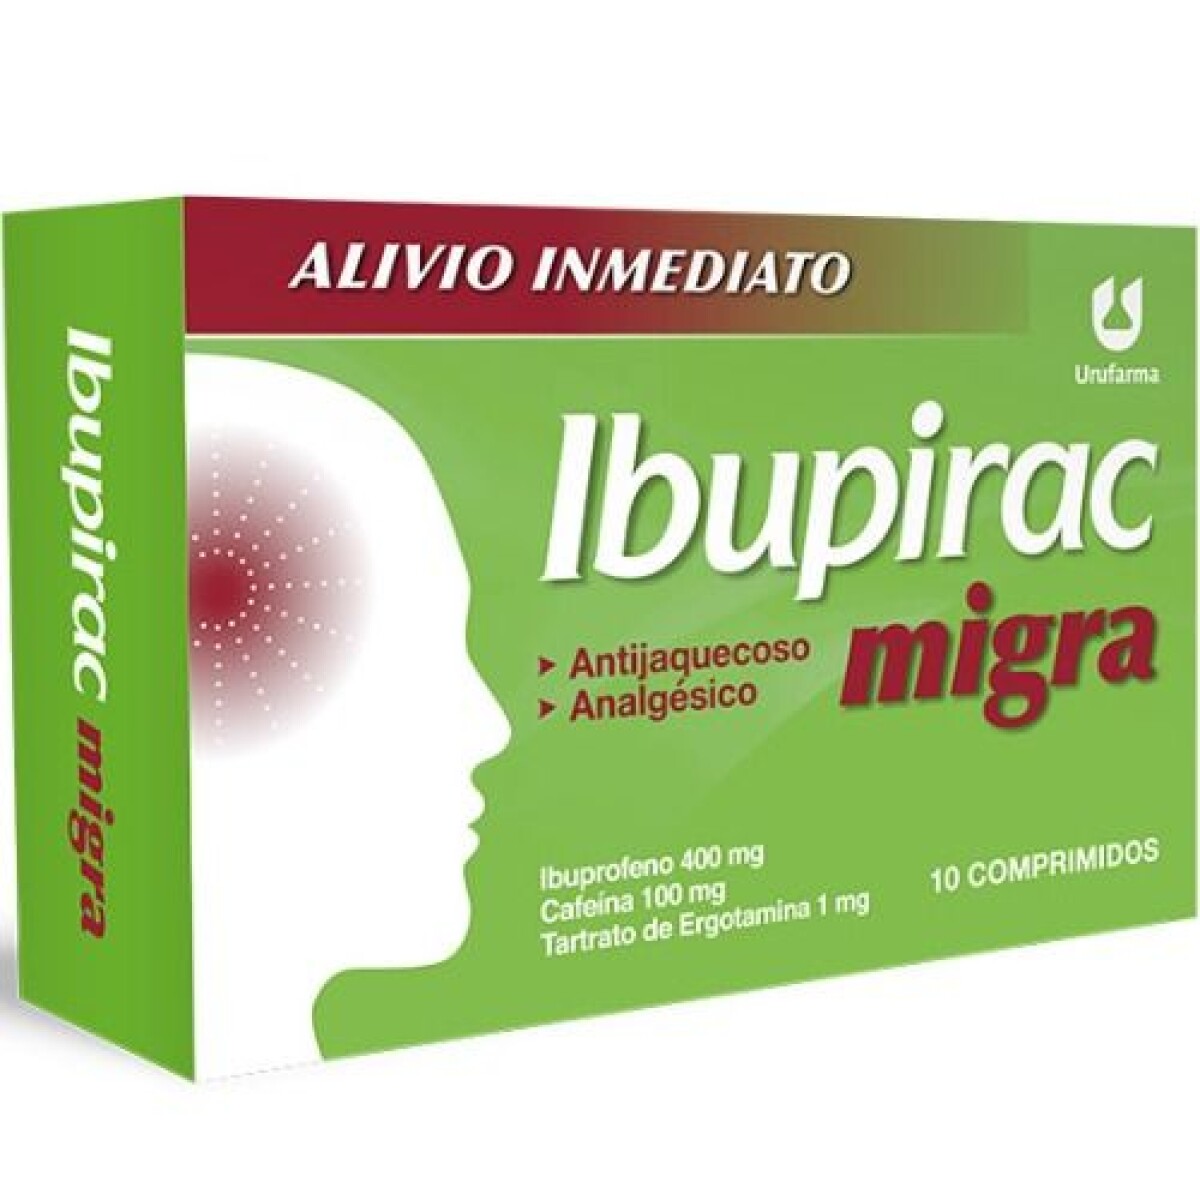 Ibupirac Migra 10 comprimidos 